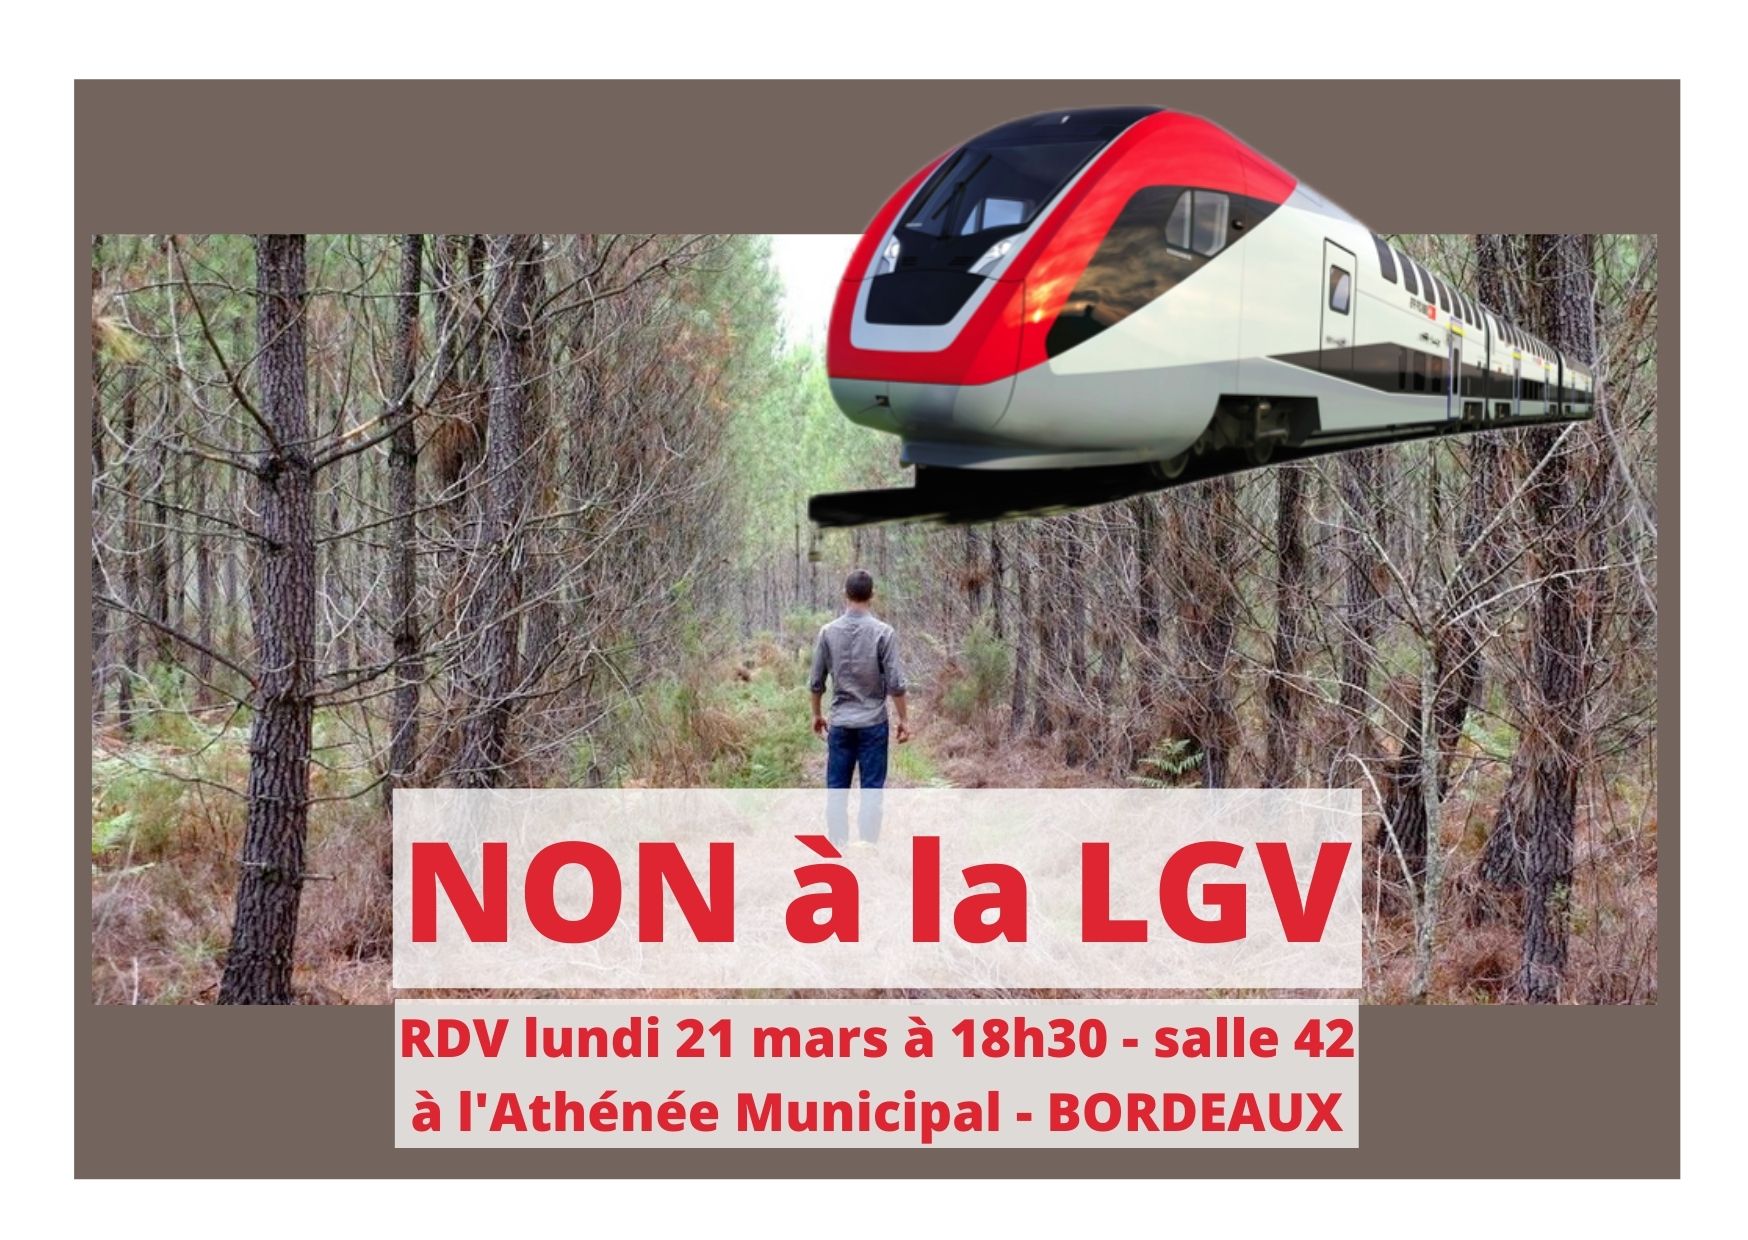 NON à La LGV Bordeaux-Toulouse, OUI Aux TRANSPORTS Du QUOTIDIEN